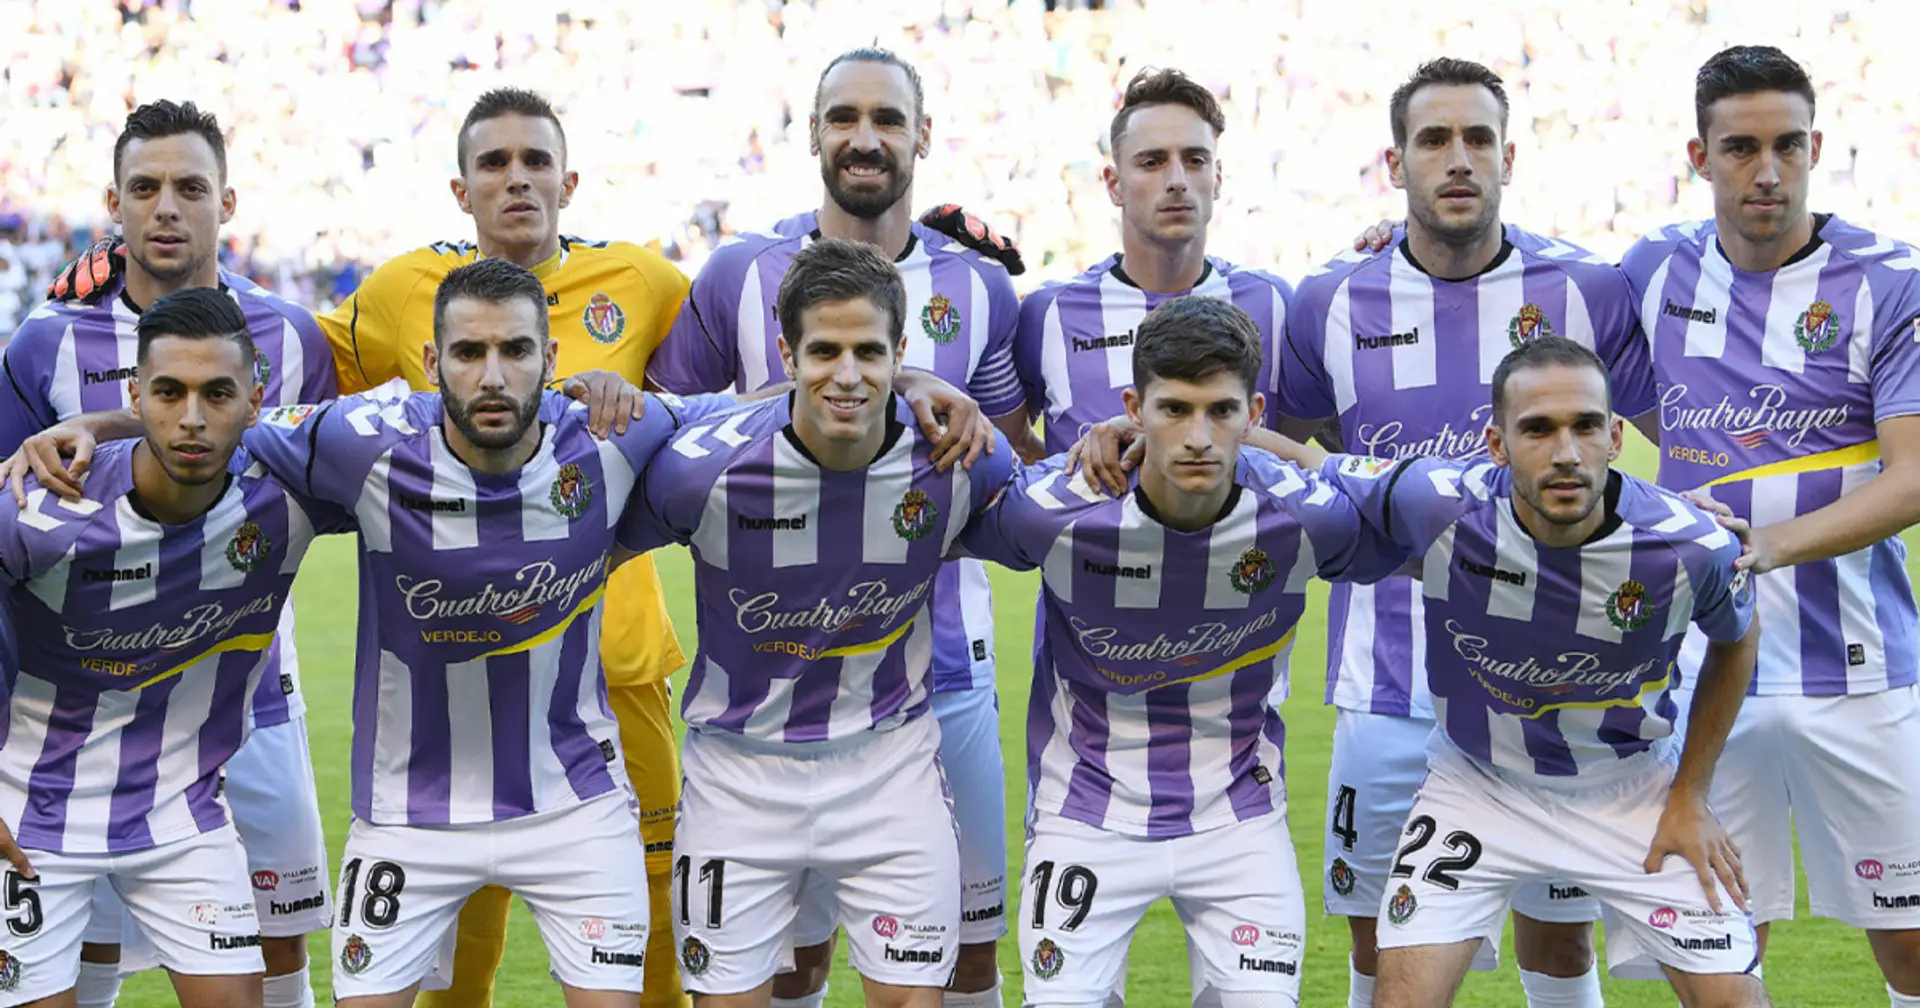 "Le persone ne hanno più bisogno di noi", grande gesto dei giocatori del Valladolid che cedono i loro test del Coronavirus